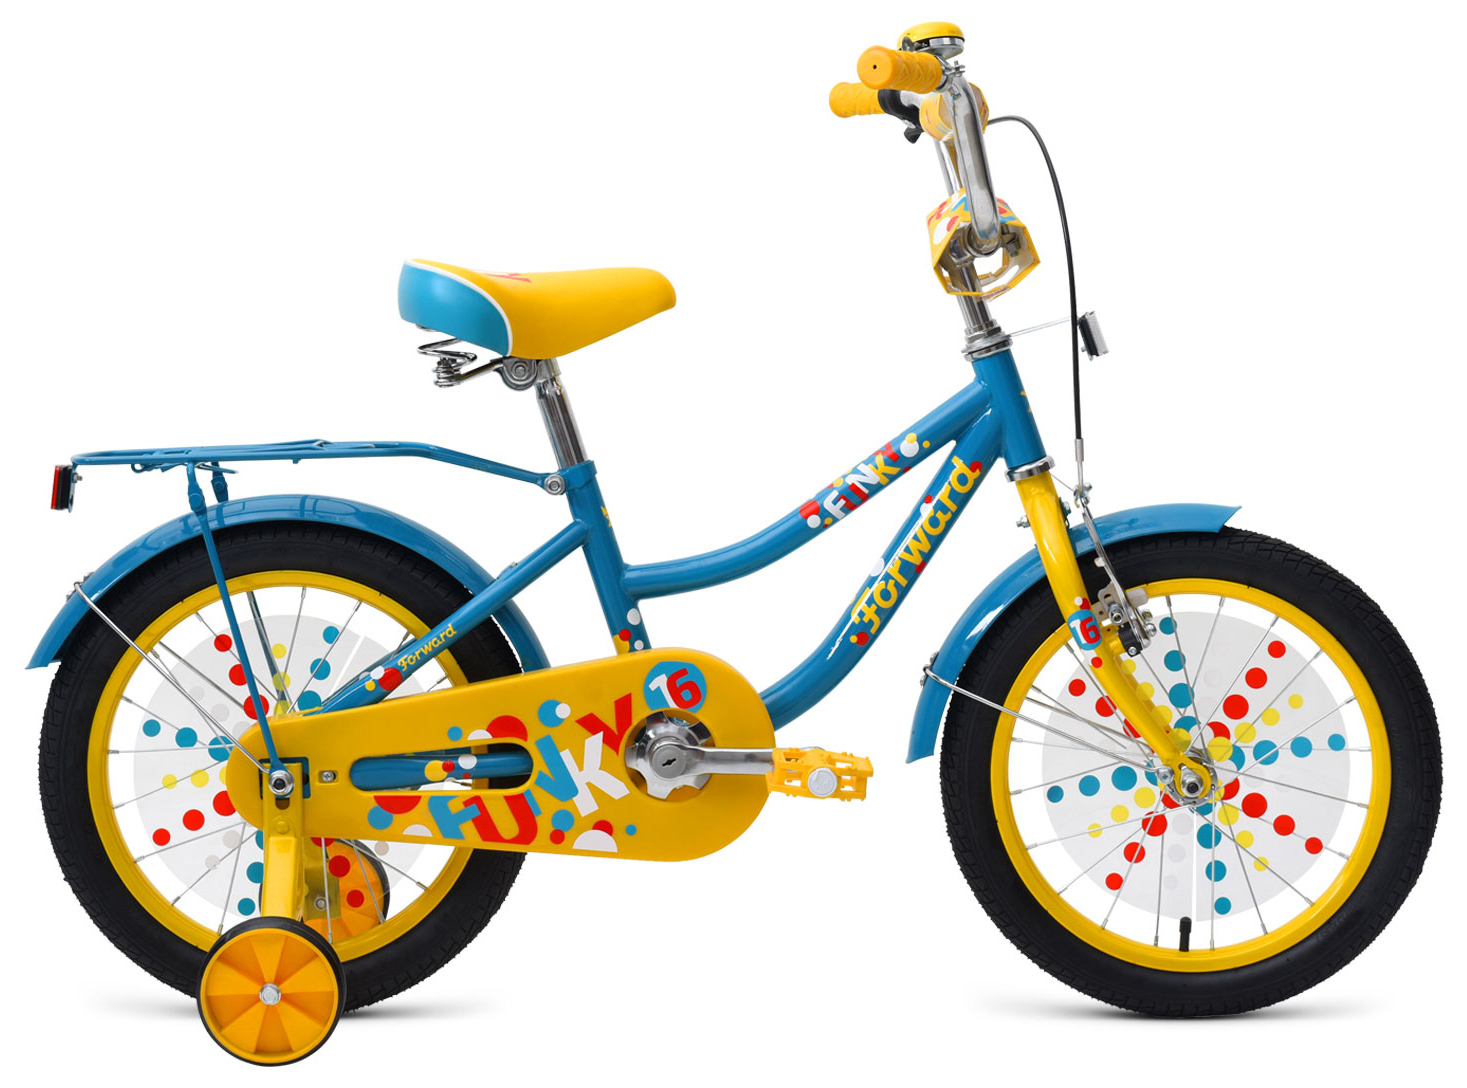  Отзывы о Трехколесный детский велосипед Forward Funky 16 2019